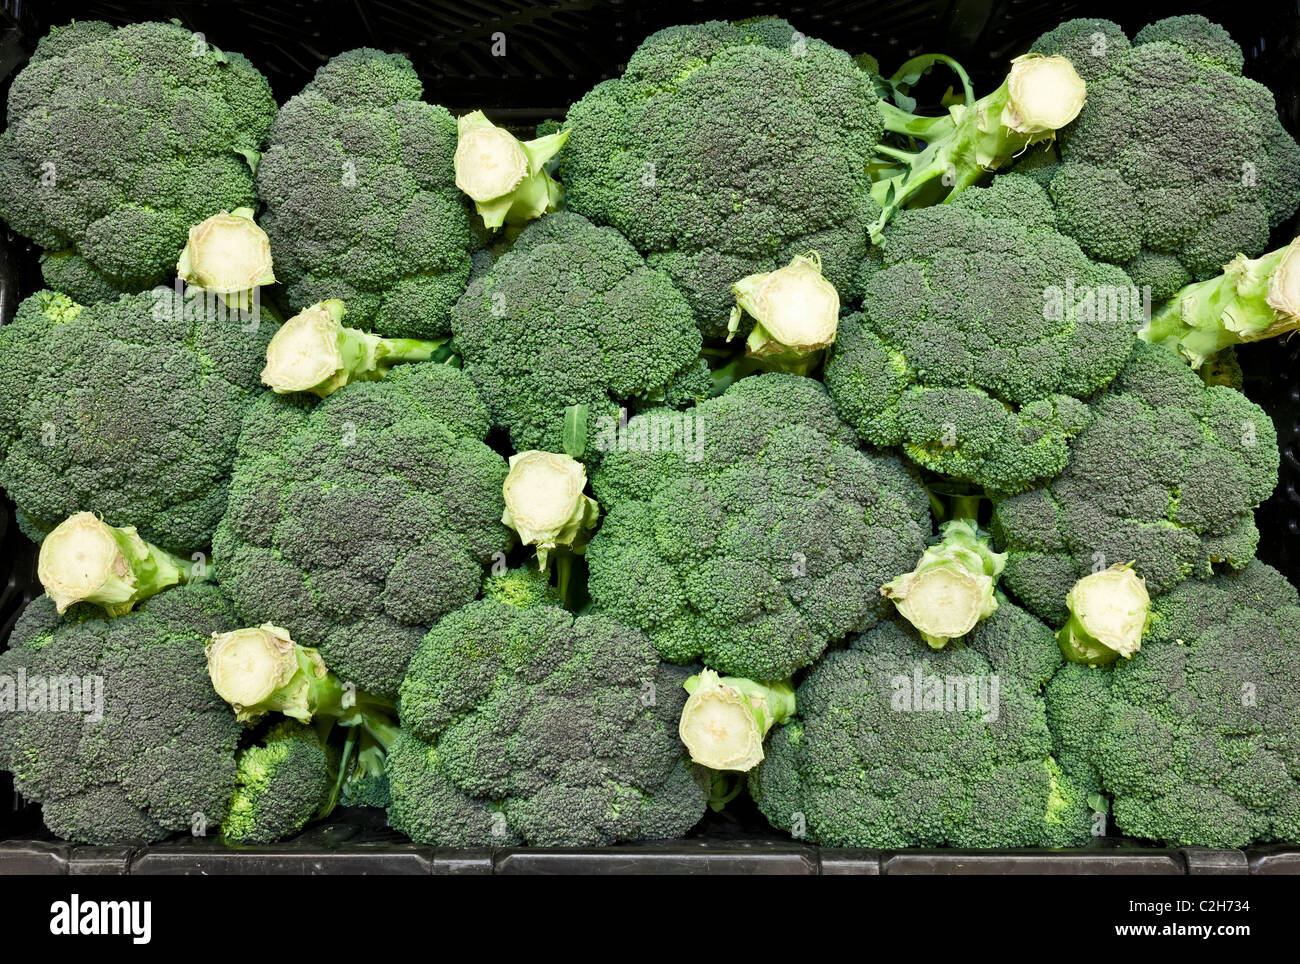 Visualizzazione di broccoli in un supermercato Foto Stock